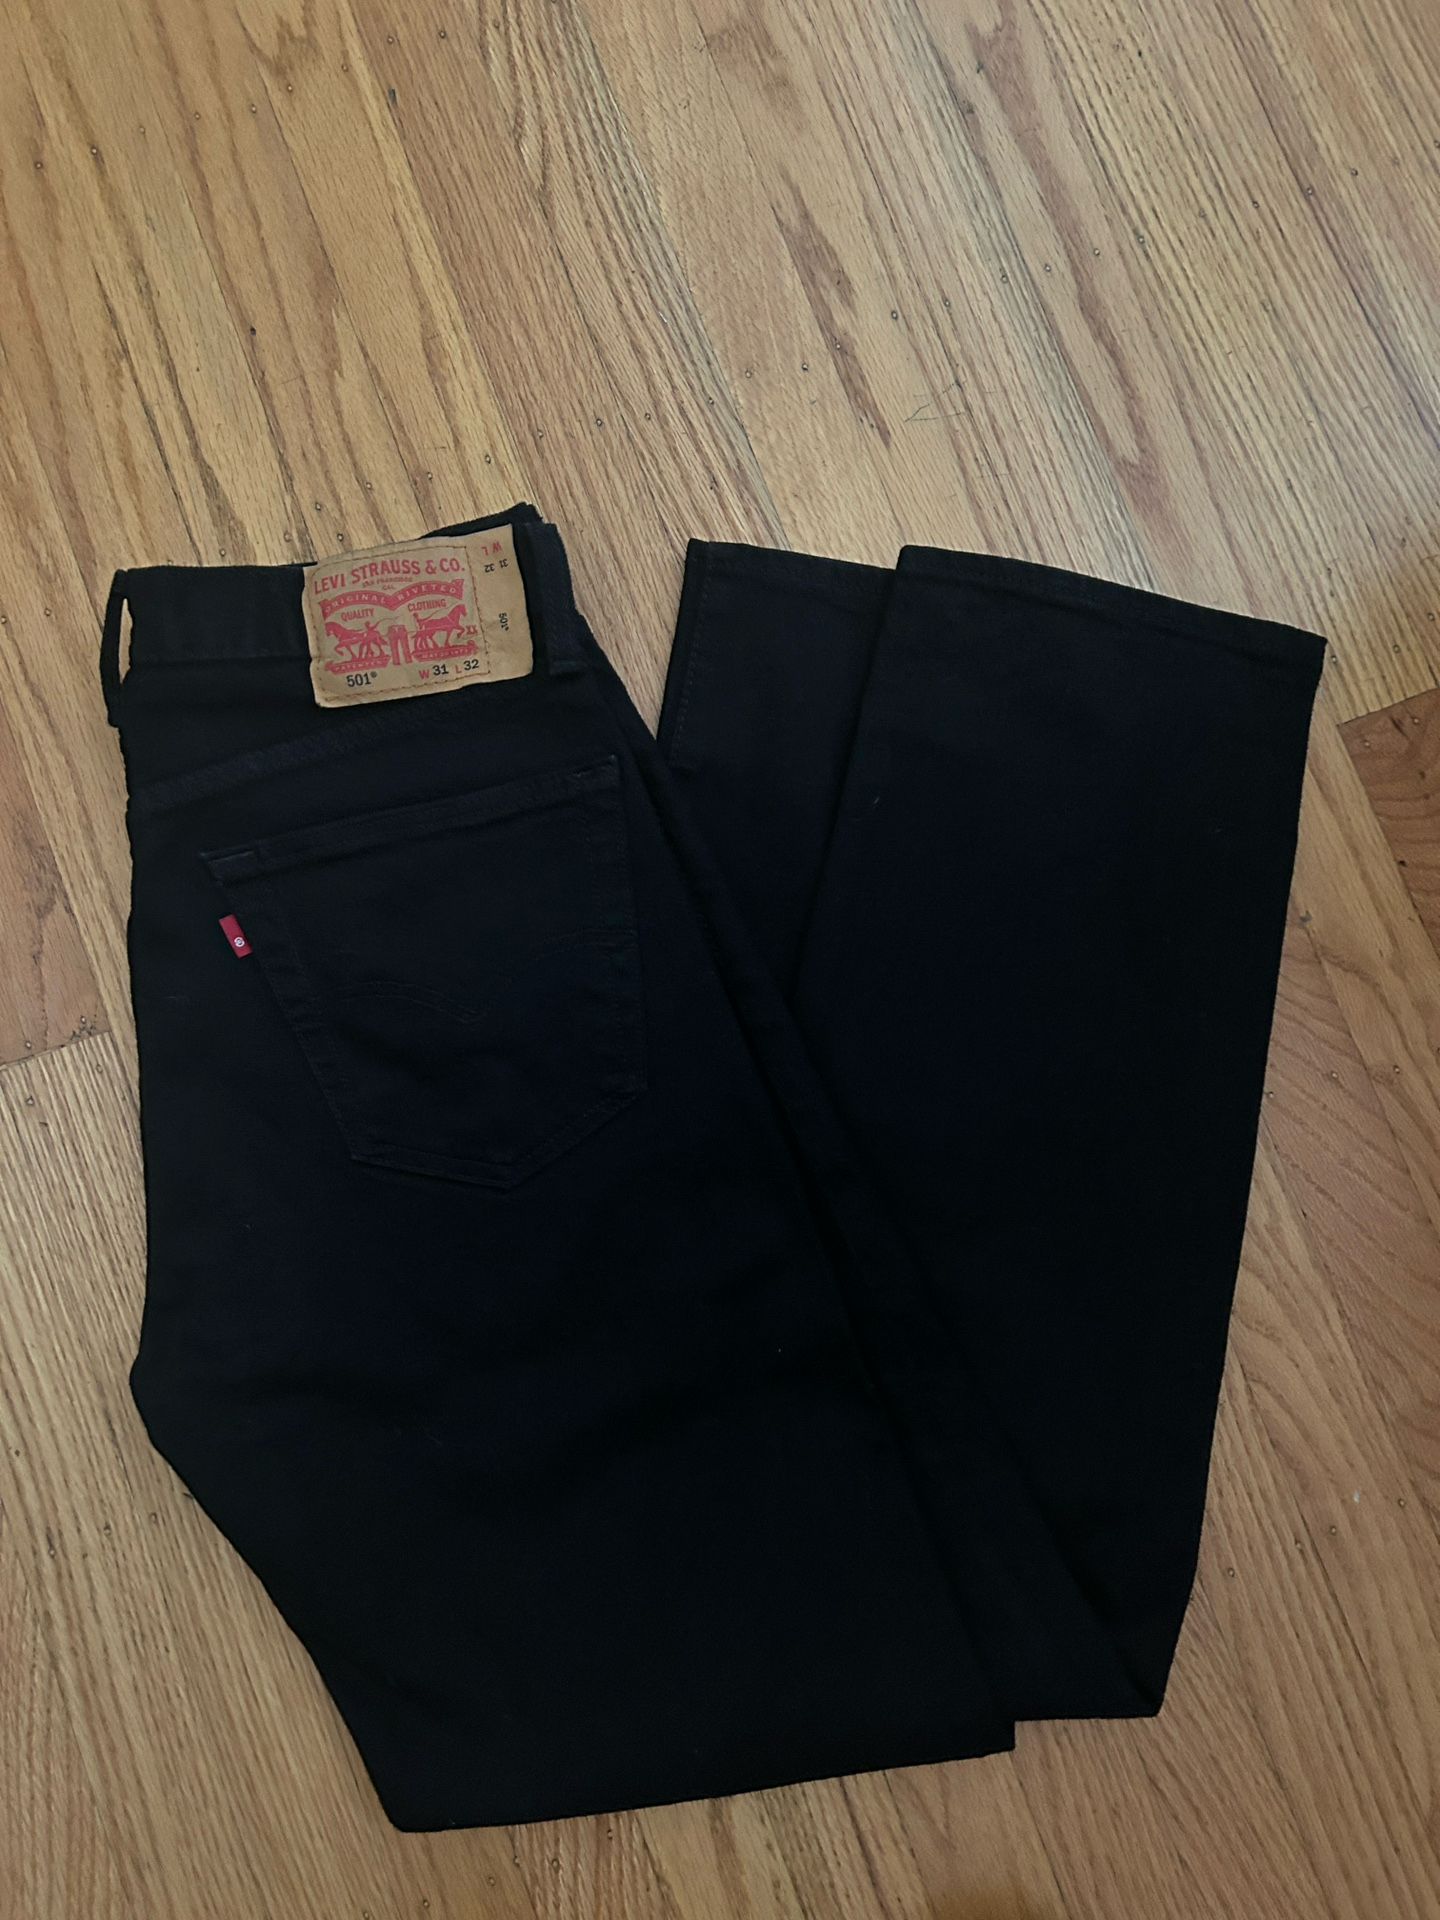 Levi’s 501 Jeans Size 31x32